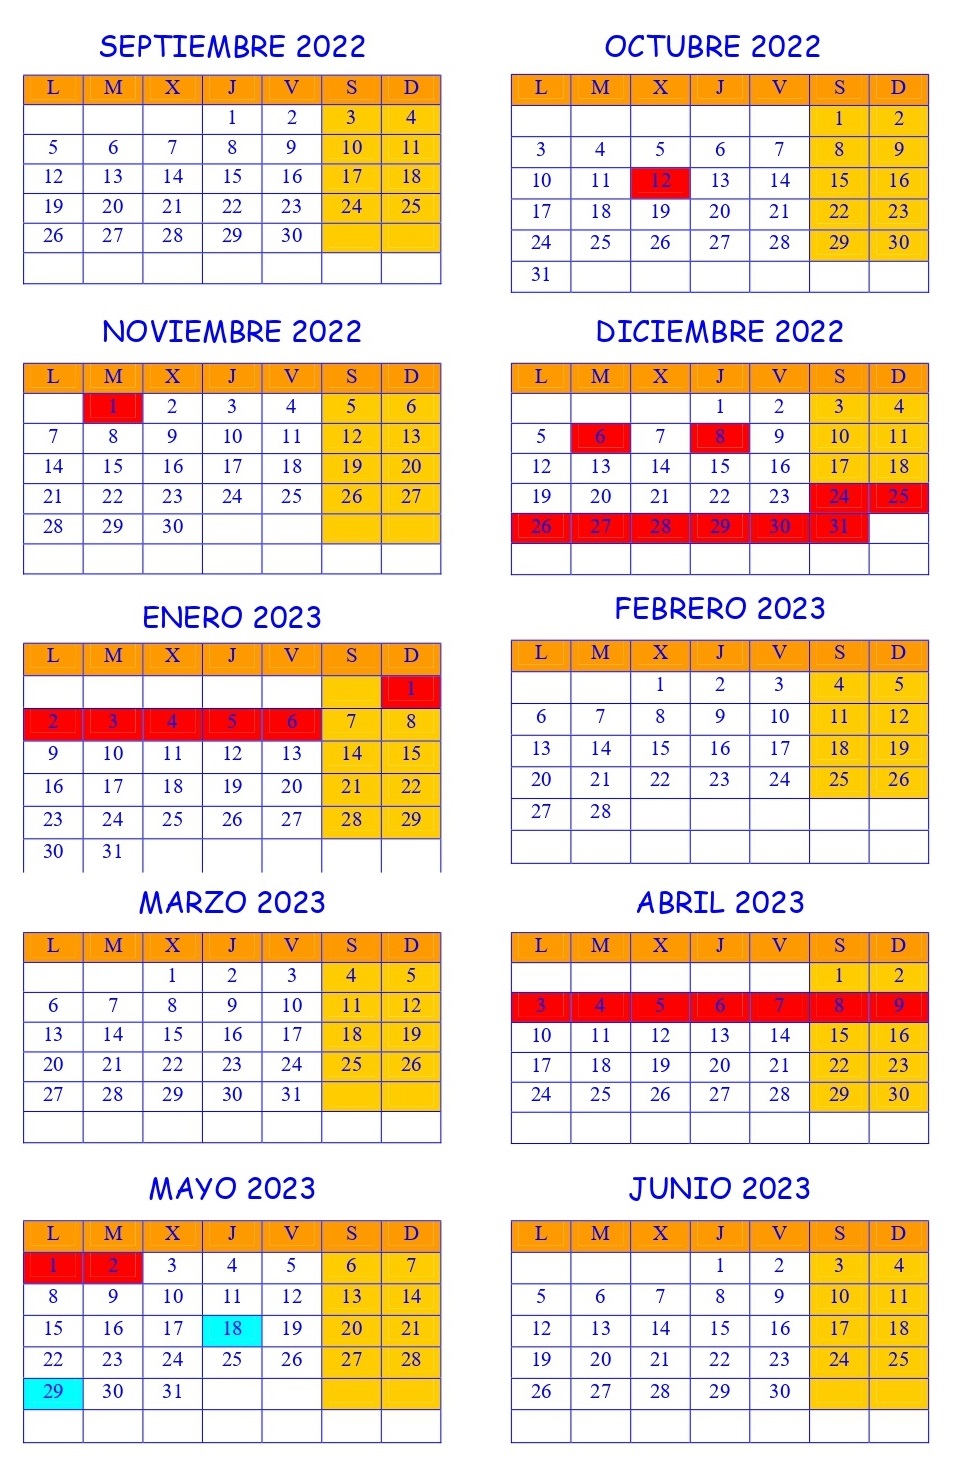 Calendario_2022-2023.jpg